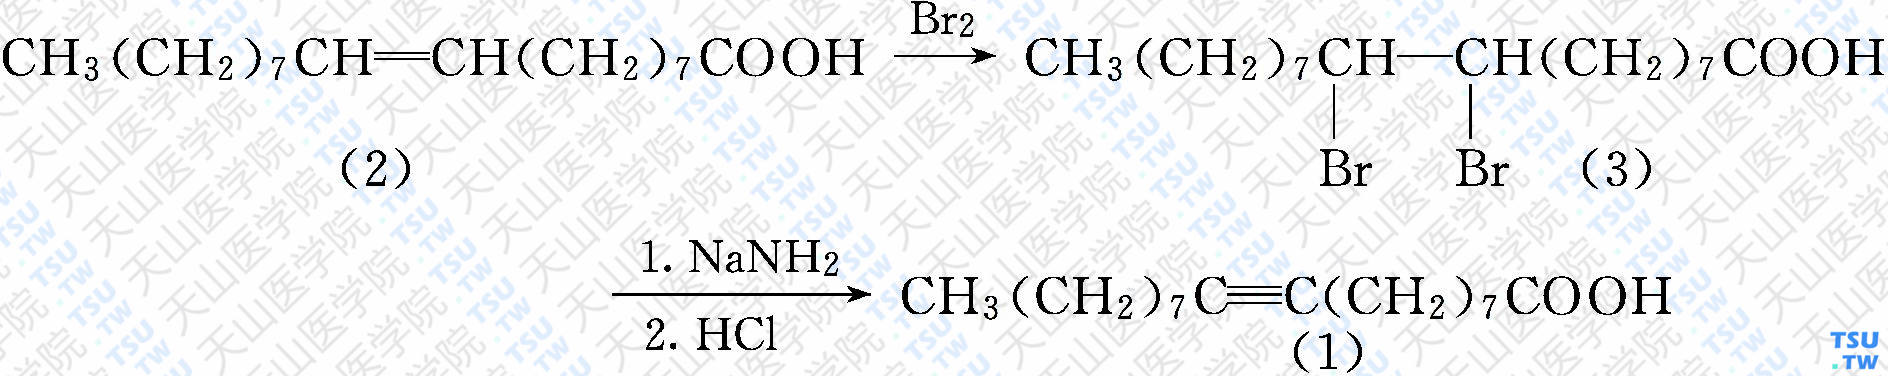 硬脂炔酸[9-十八（碳）炔酸]（分子式：C<sub>18</sub>H<sub>32</sub>O<sub>2</sub>）的合成方法路线及其结构式